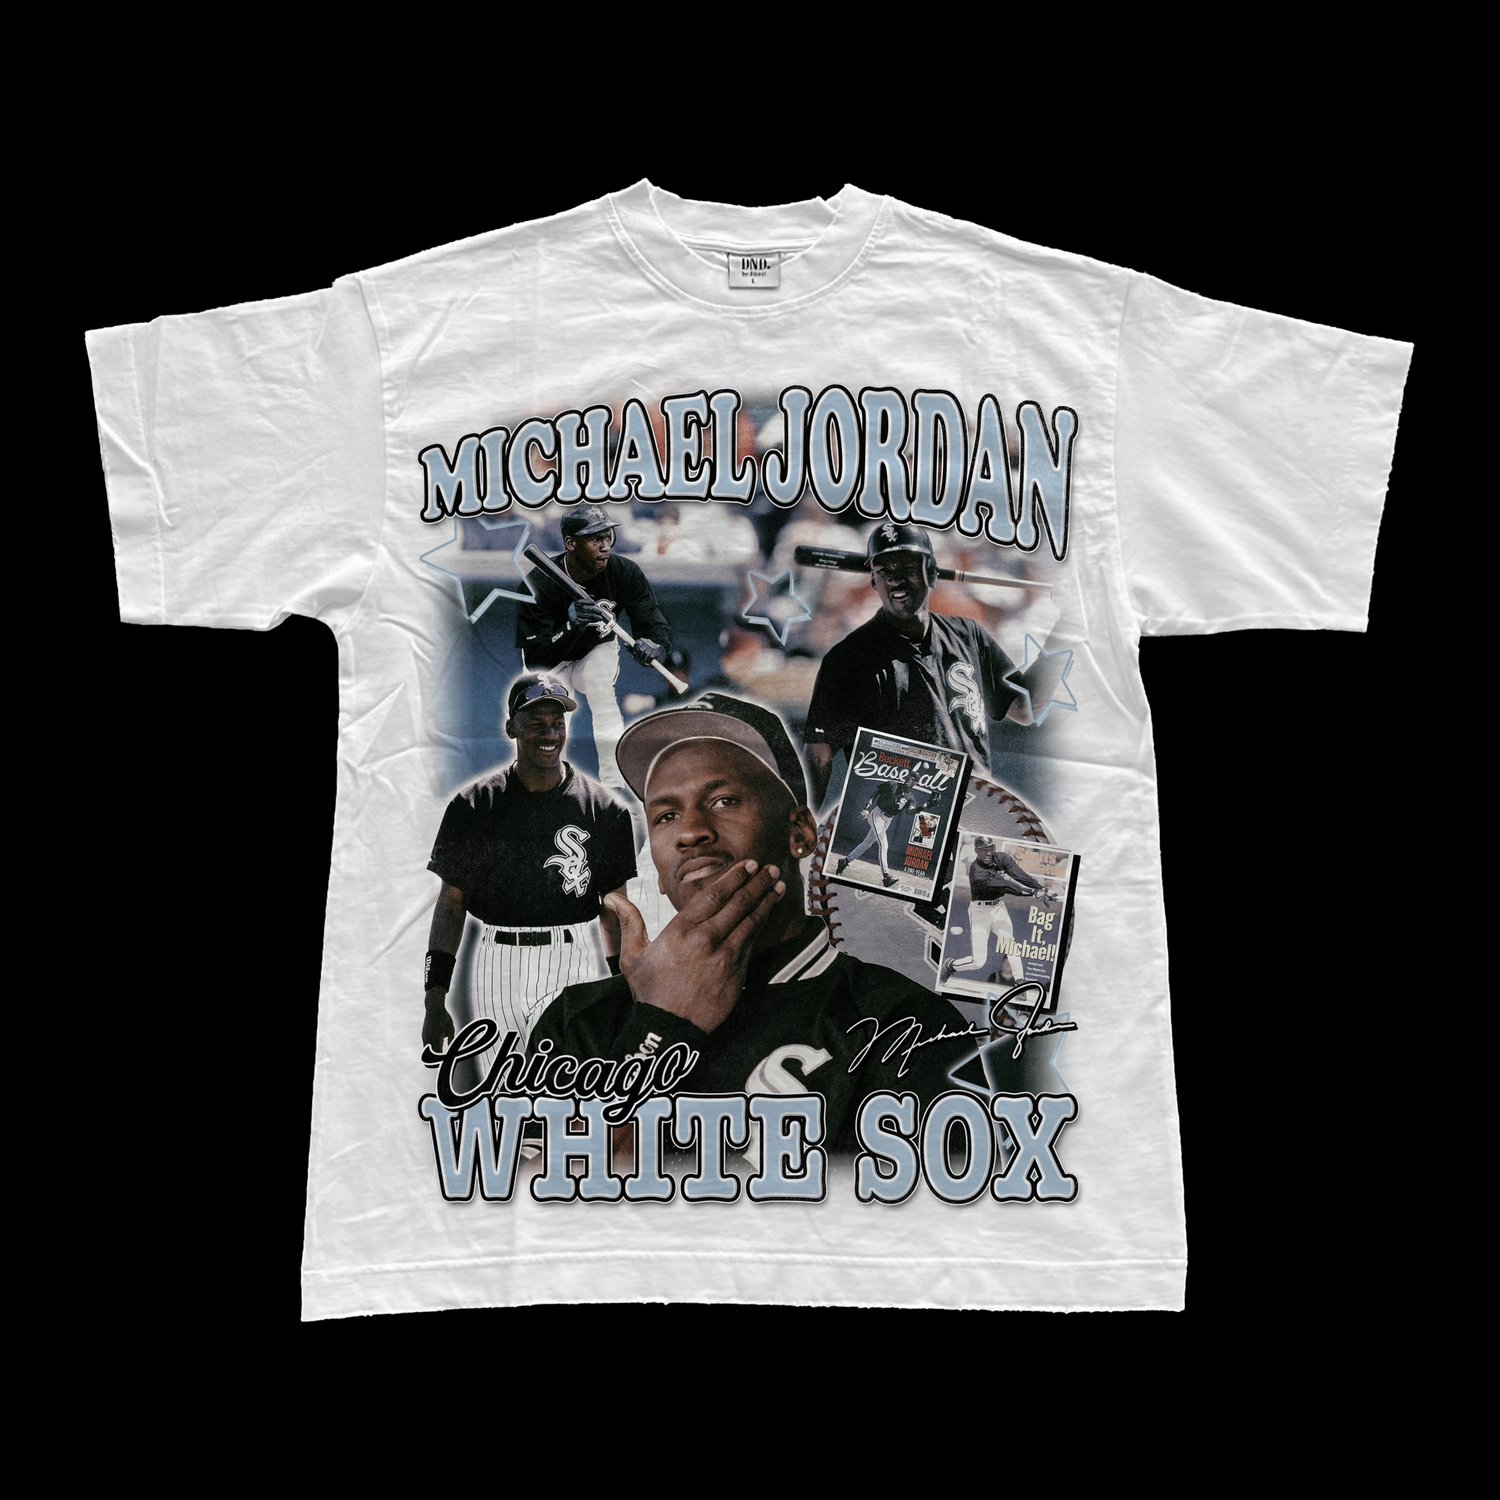 Jordan White Sox T